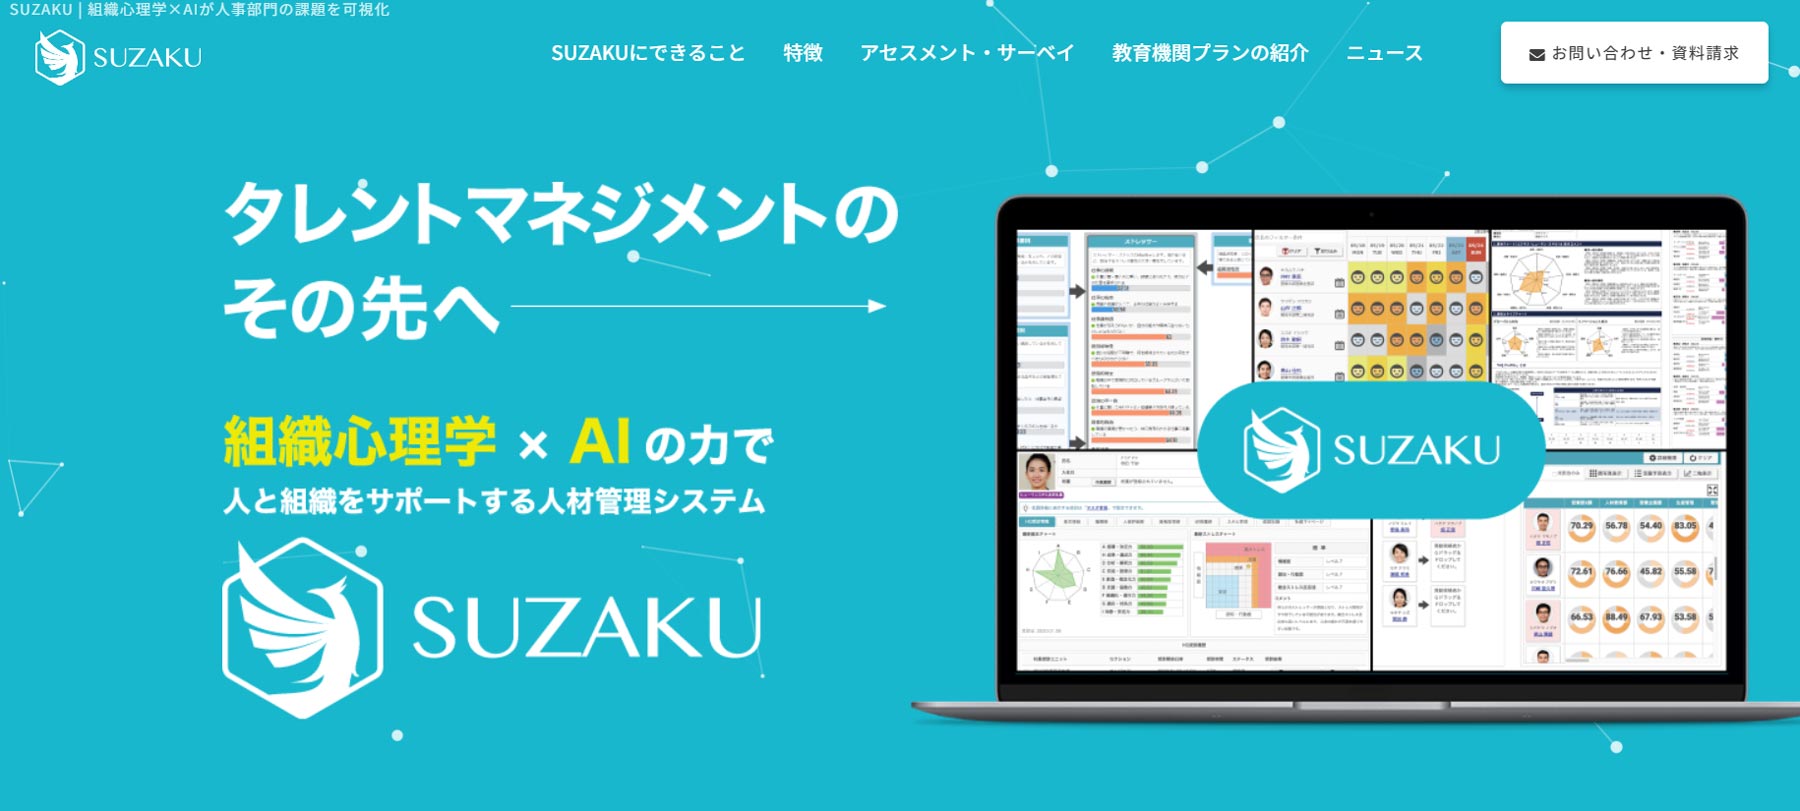 SUZAKU公式Webサイト